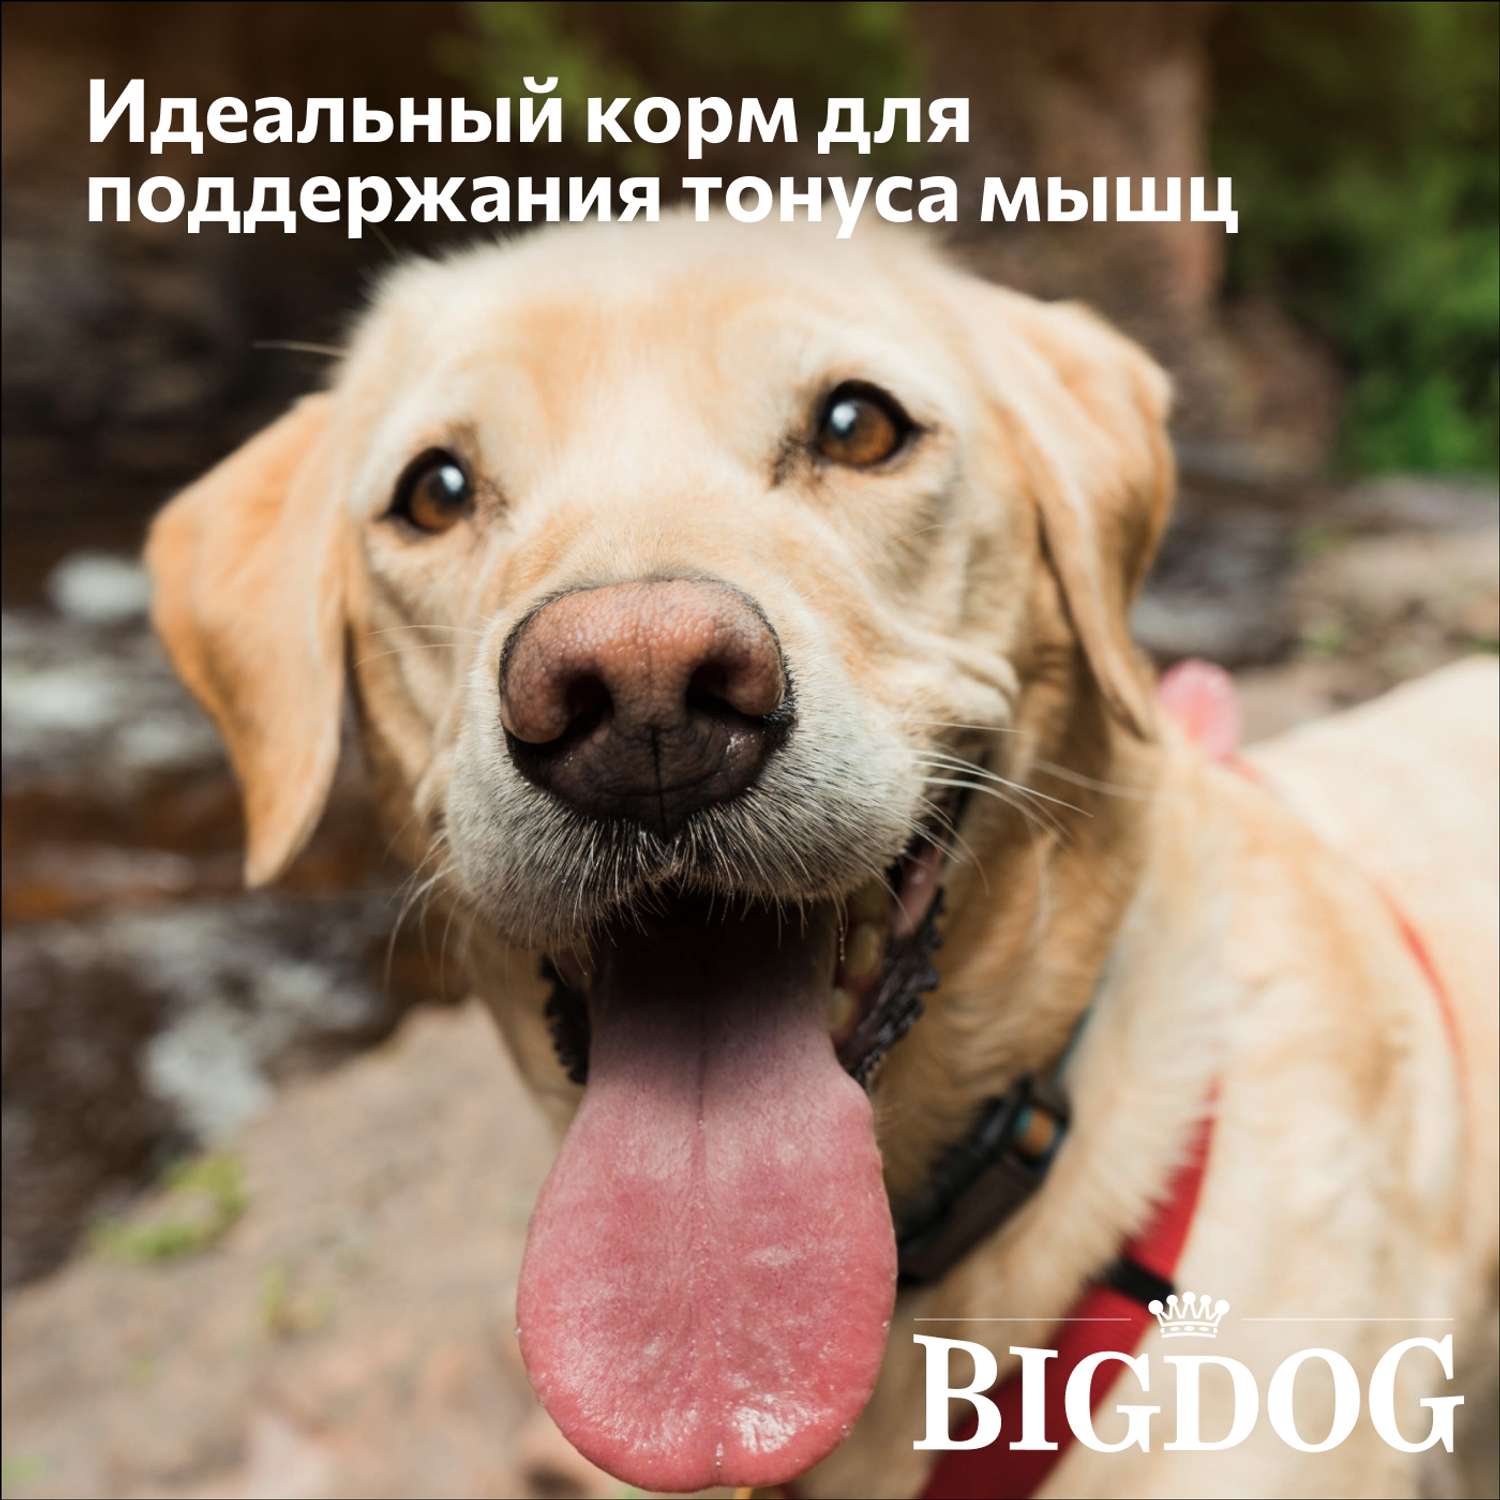 Корм сухой Зоогурман полнорационный для взрослых собак средних и крупных пород Big dog Птица MIX 10 кг - фото 2